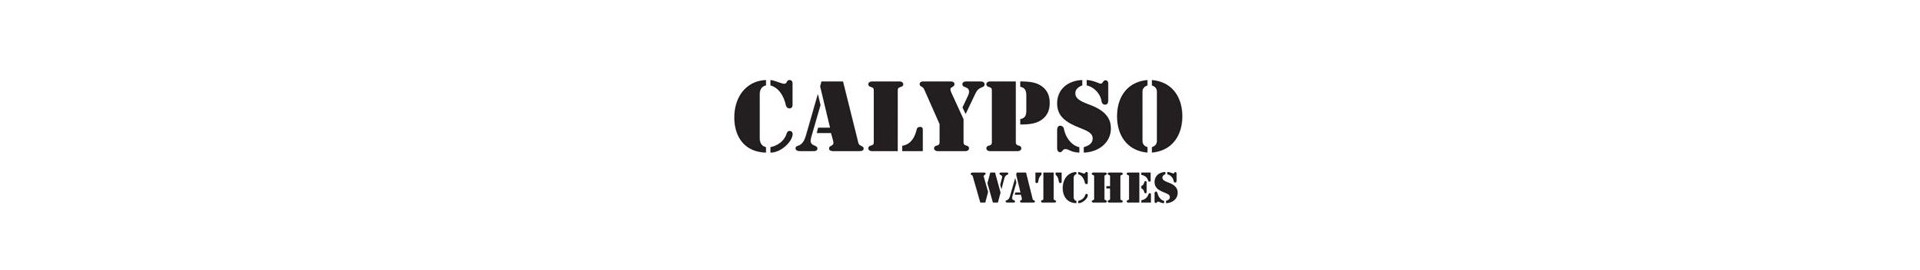 Comprar reloj Calypso. Relojería online de Joyería Orisan.